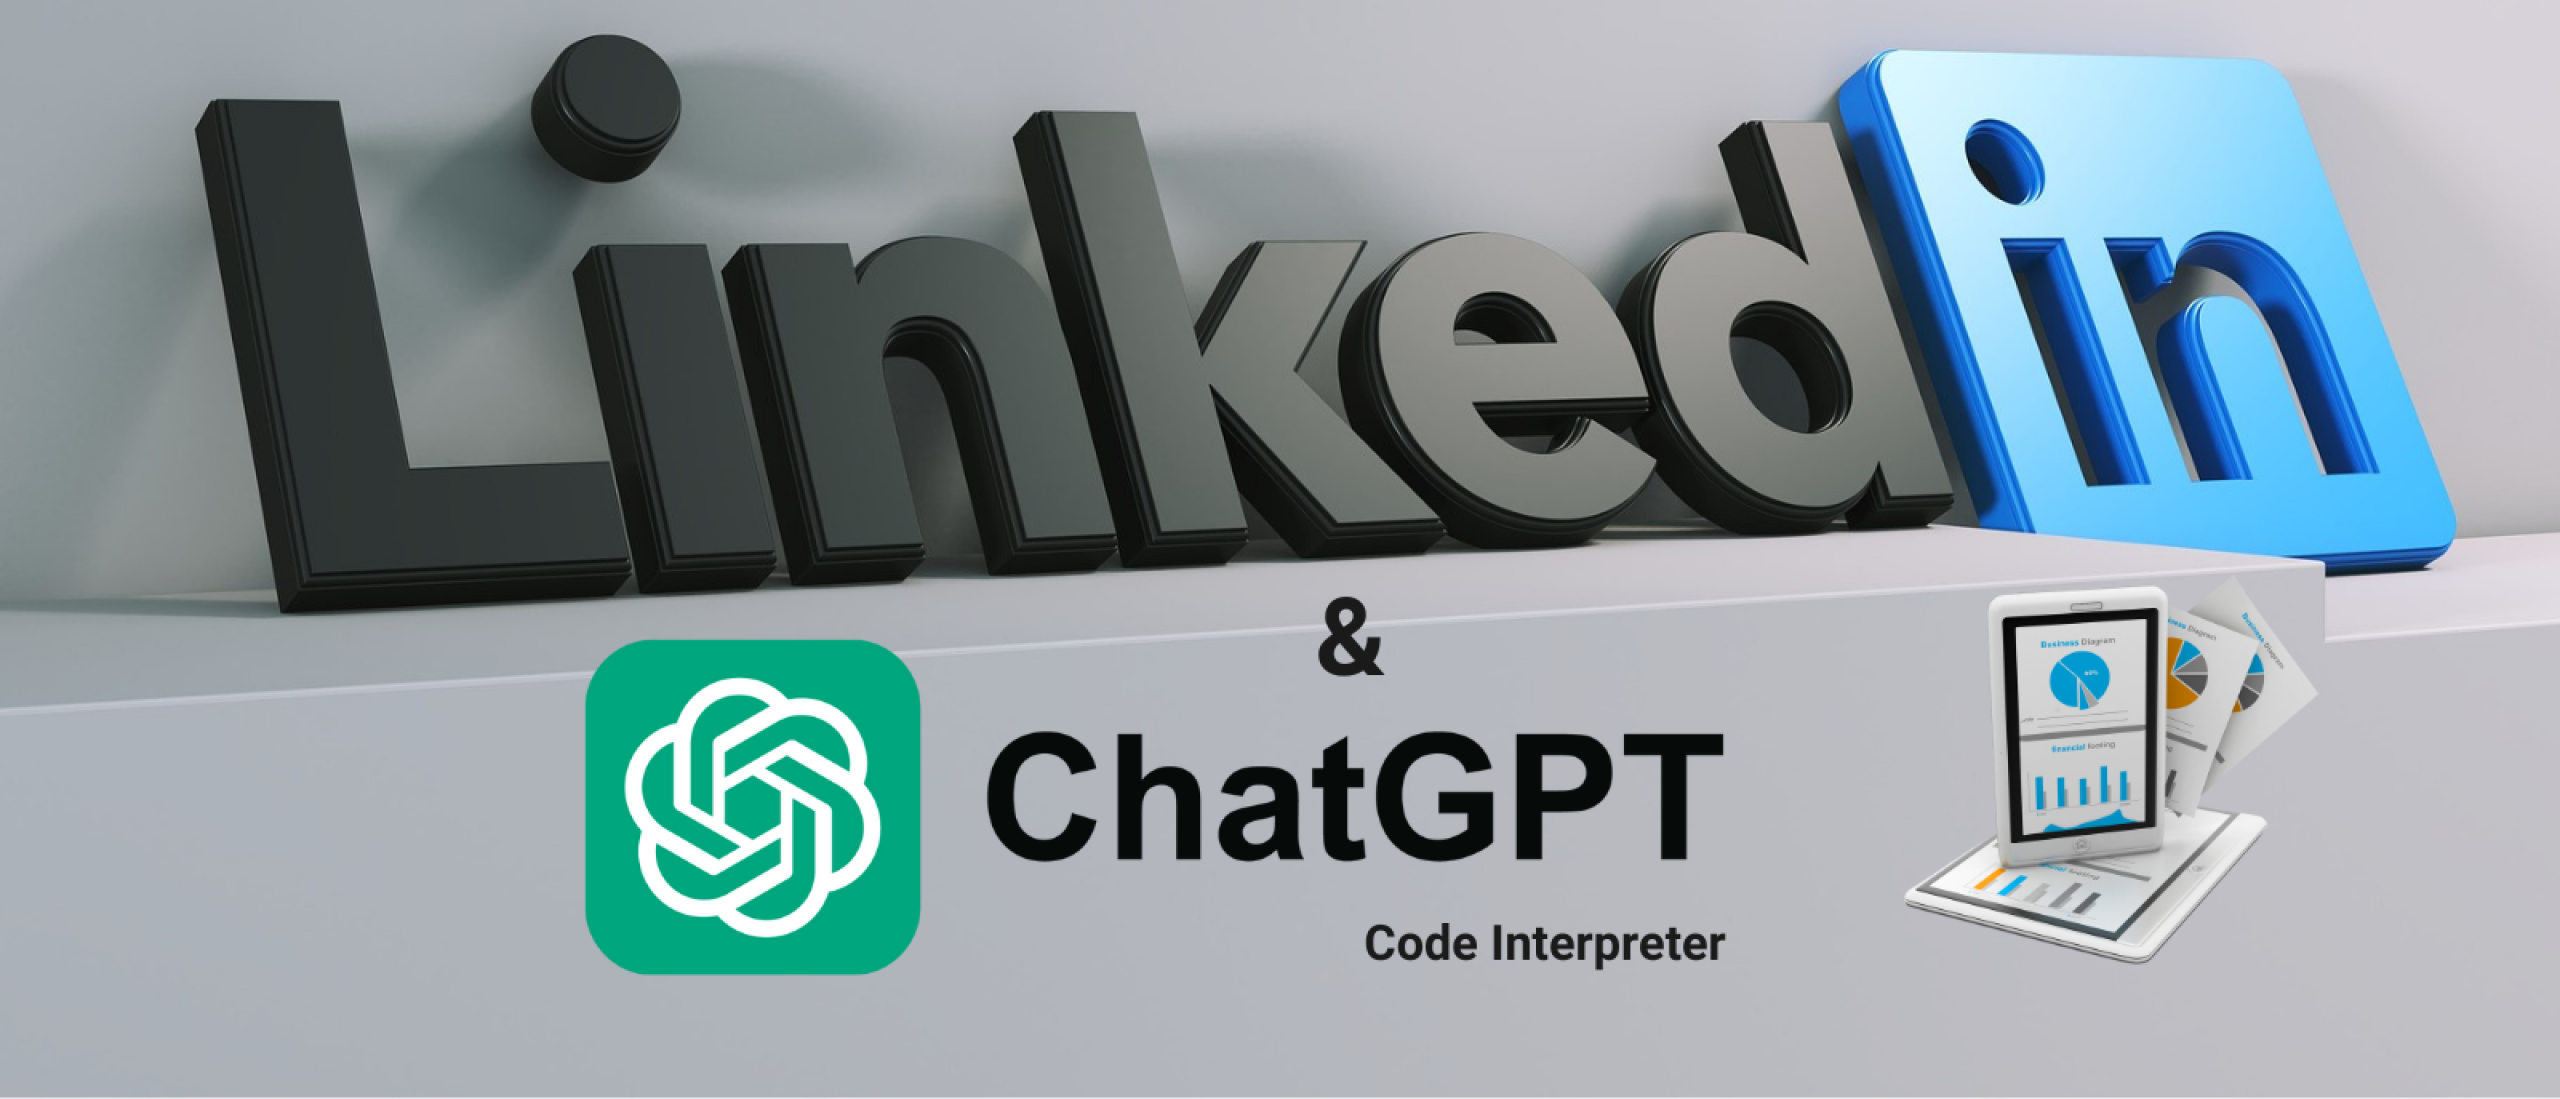 LinkedIn Recruiter combineren met ChatGPT Code Interpreter - deel1